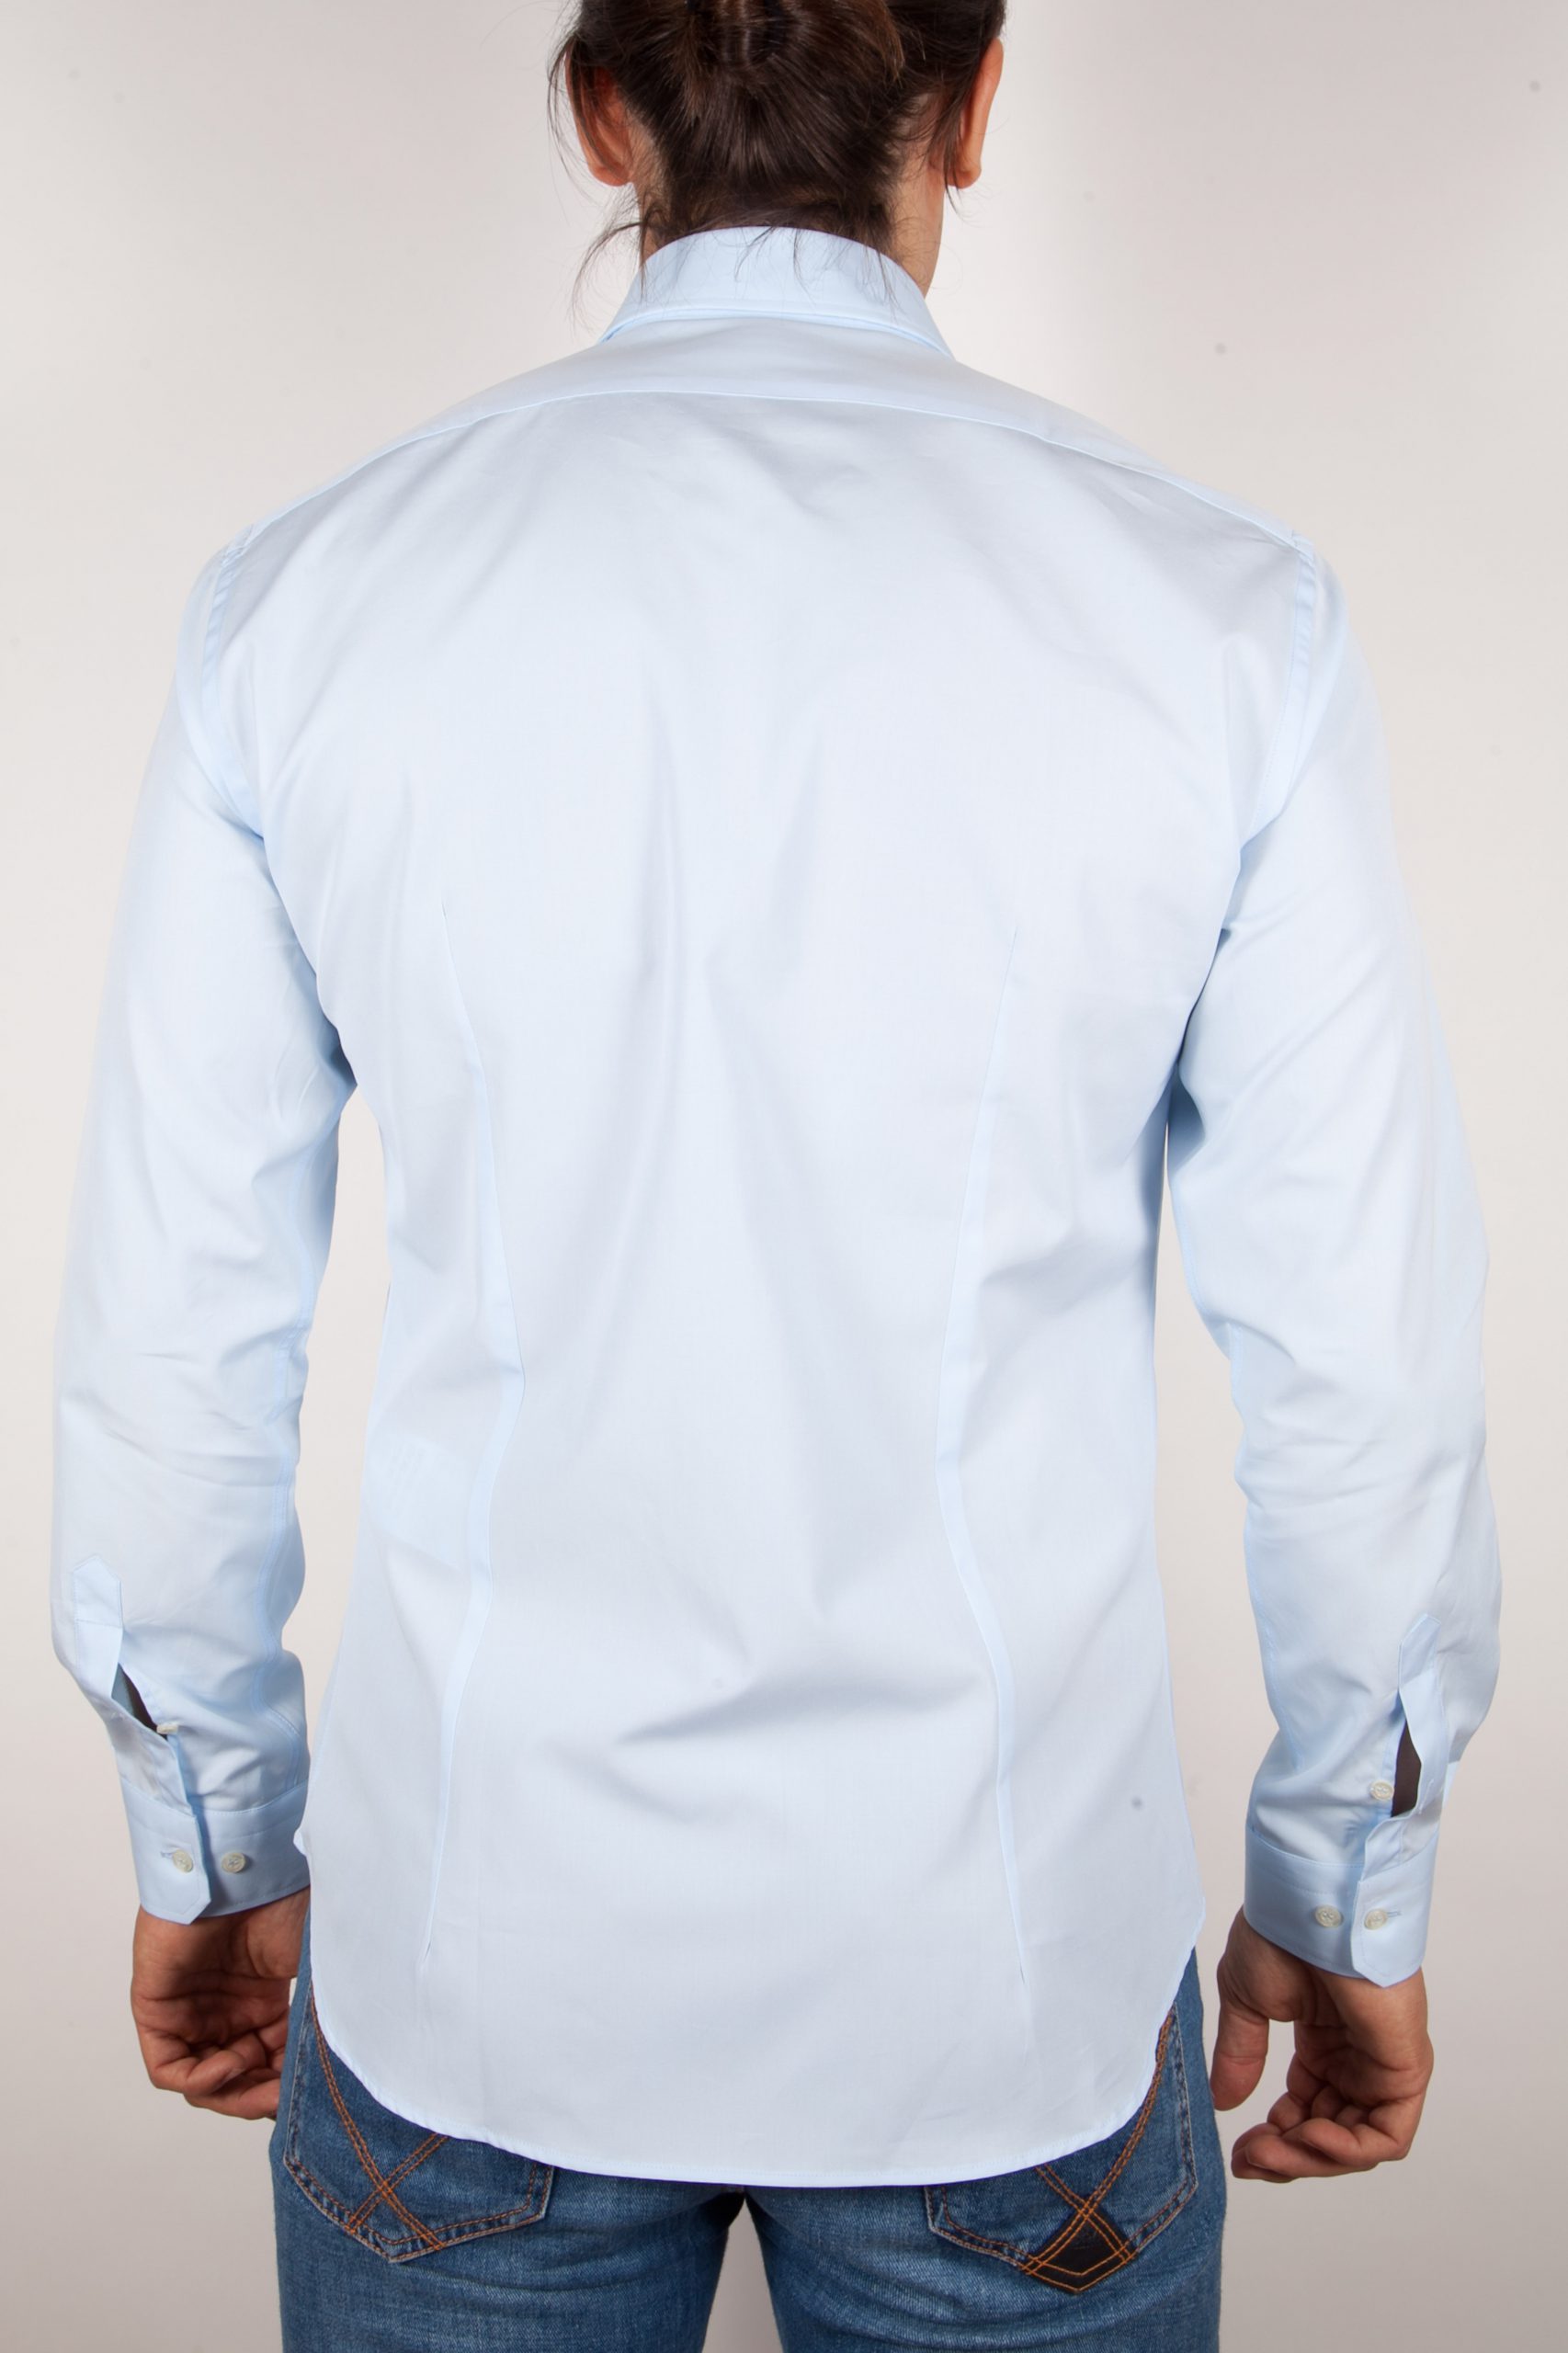 Fashion shirt, italian collar - Poggianti camicie